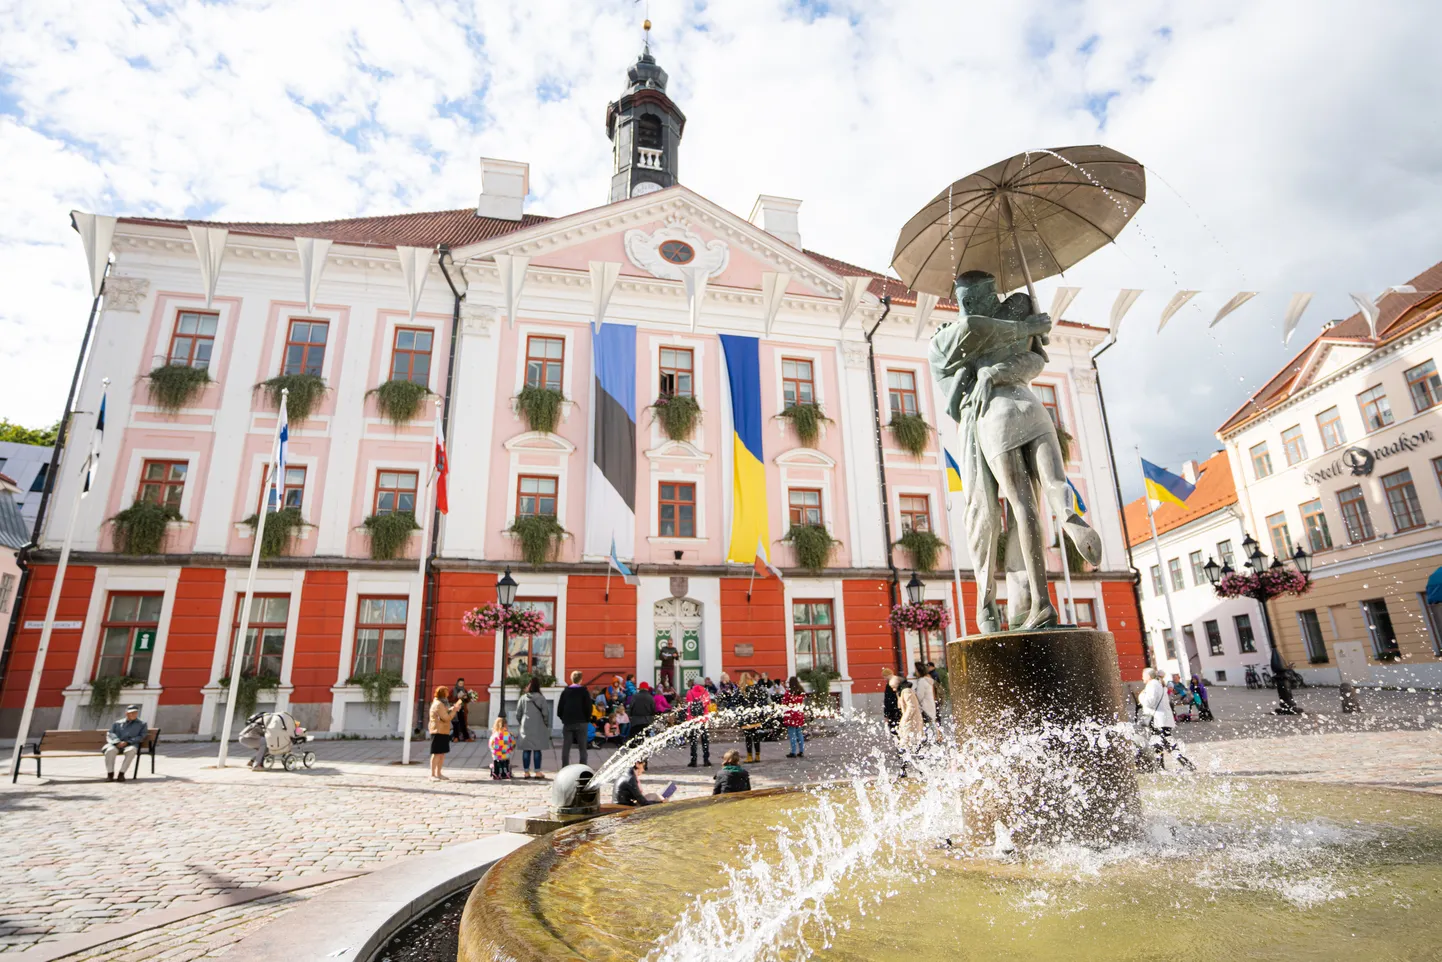 Kuigi turismisektor on Eestis tublisti kasvanud, on suurim väljakutse Tartule ja teistele Lõuna-Eesti maakondadele väliskülaliste meelitamine.